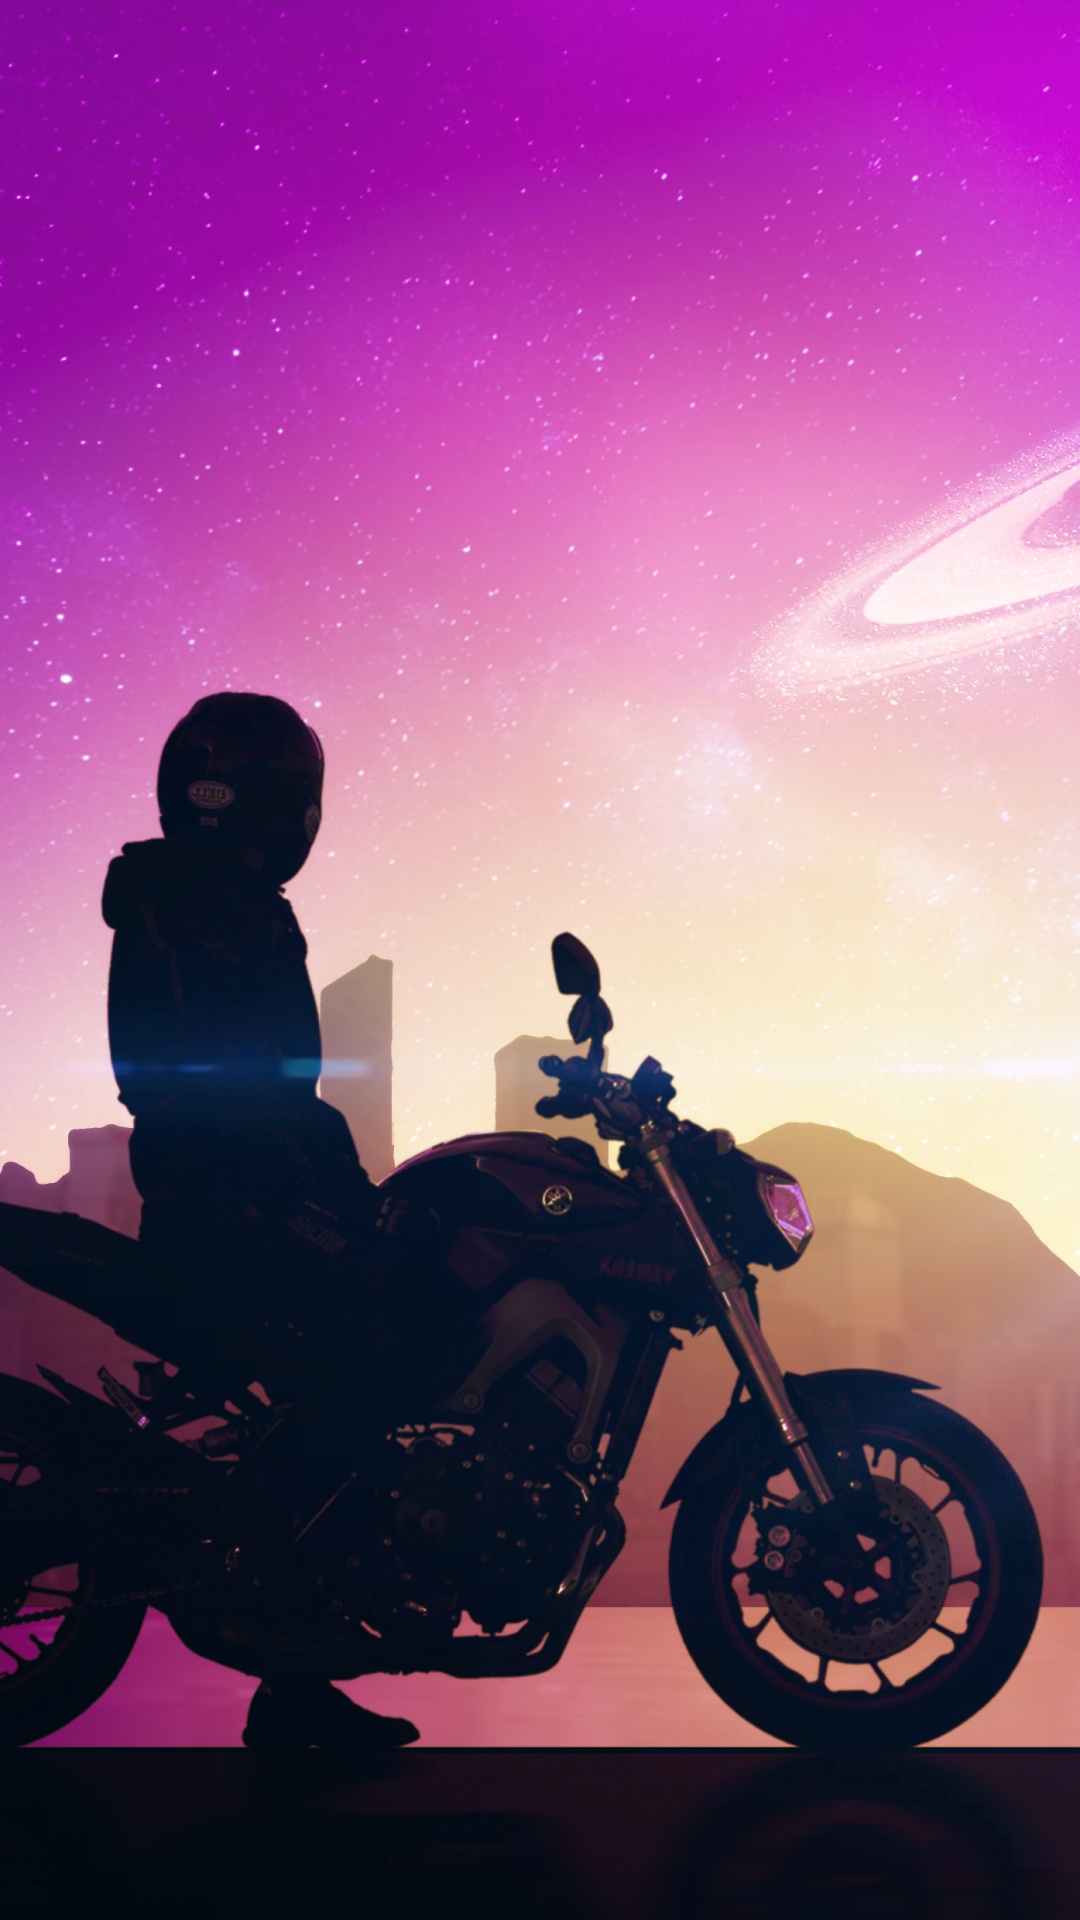 Hombre en Motocicleta Durante la Noche. Wallpaper in 1080x1920 Resolution